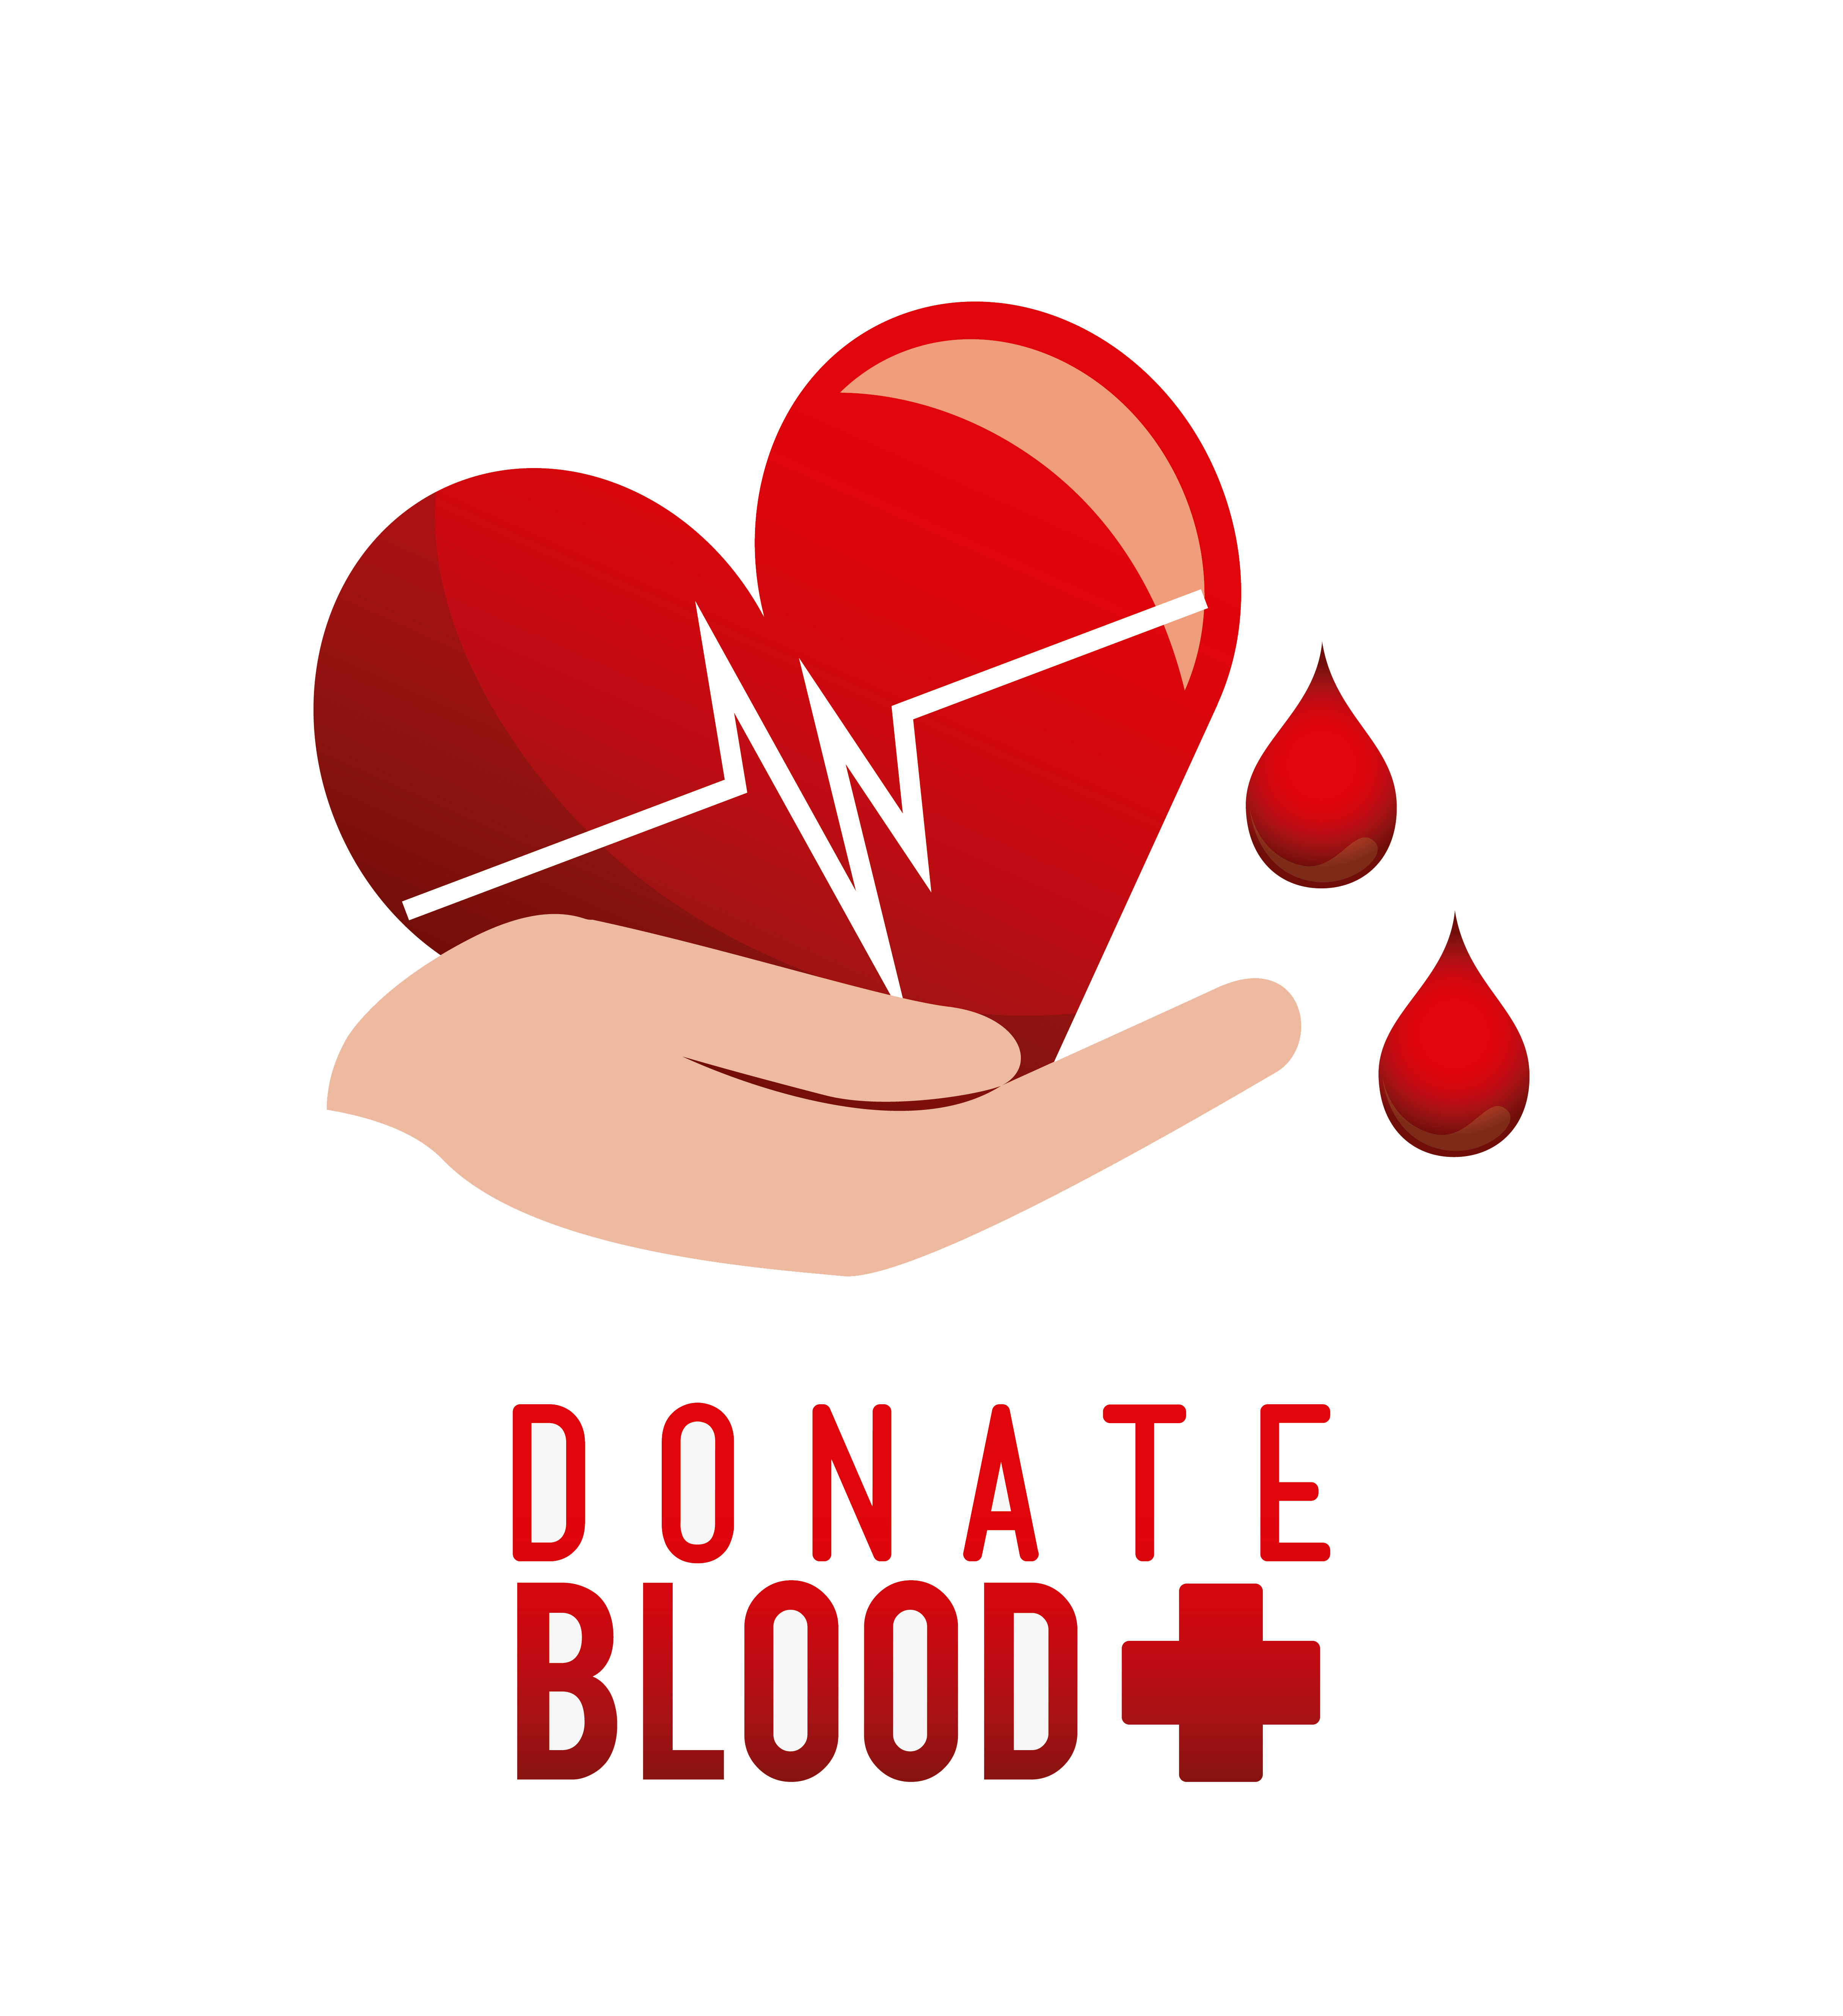 Донорство. Blood donation донорство. Донор логотип. Логотип донорства крови. День донора символ.